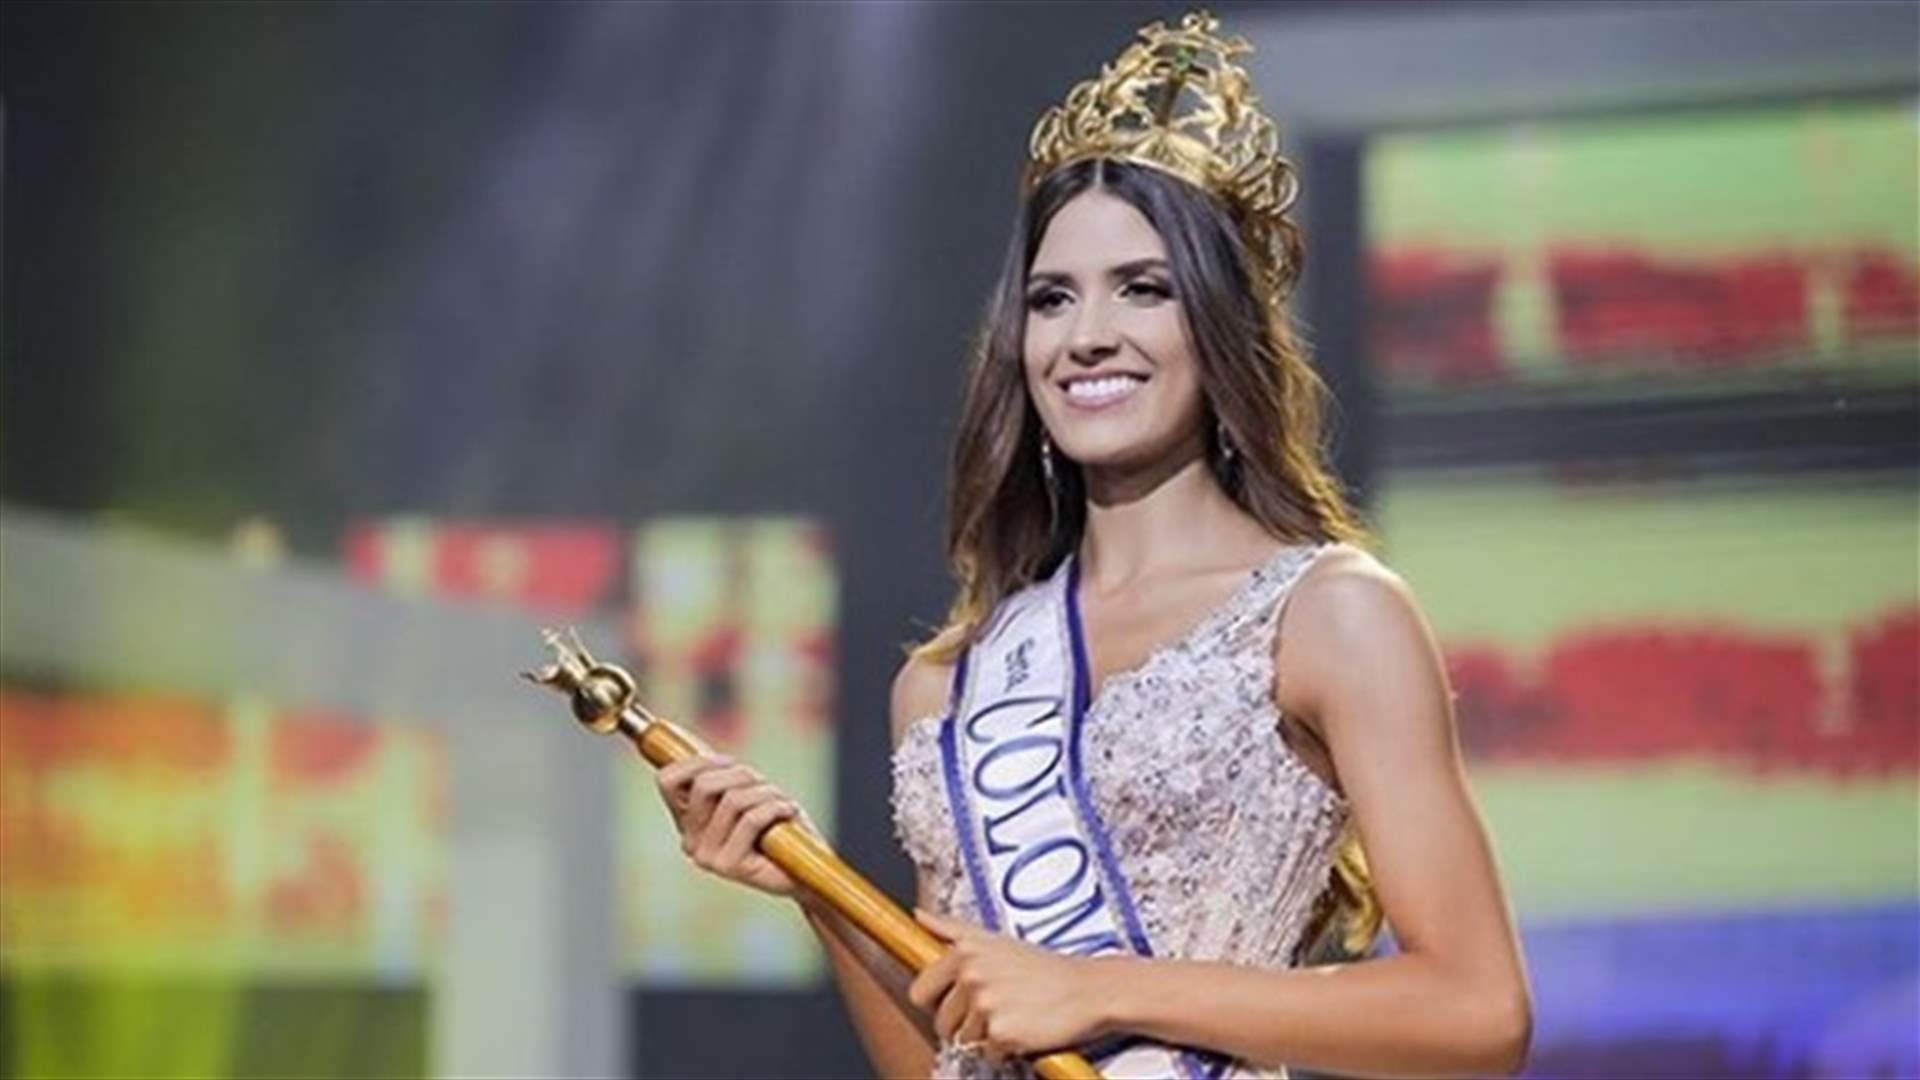 ملكة جمال كولومبيا لعام 2019 من أصول لبنانية